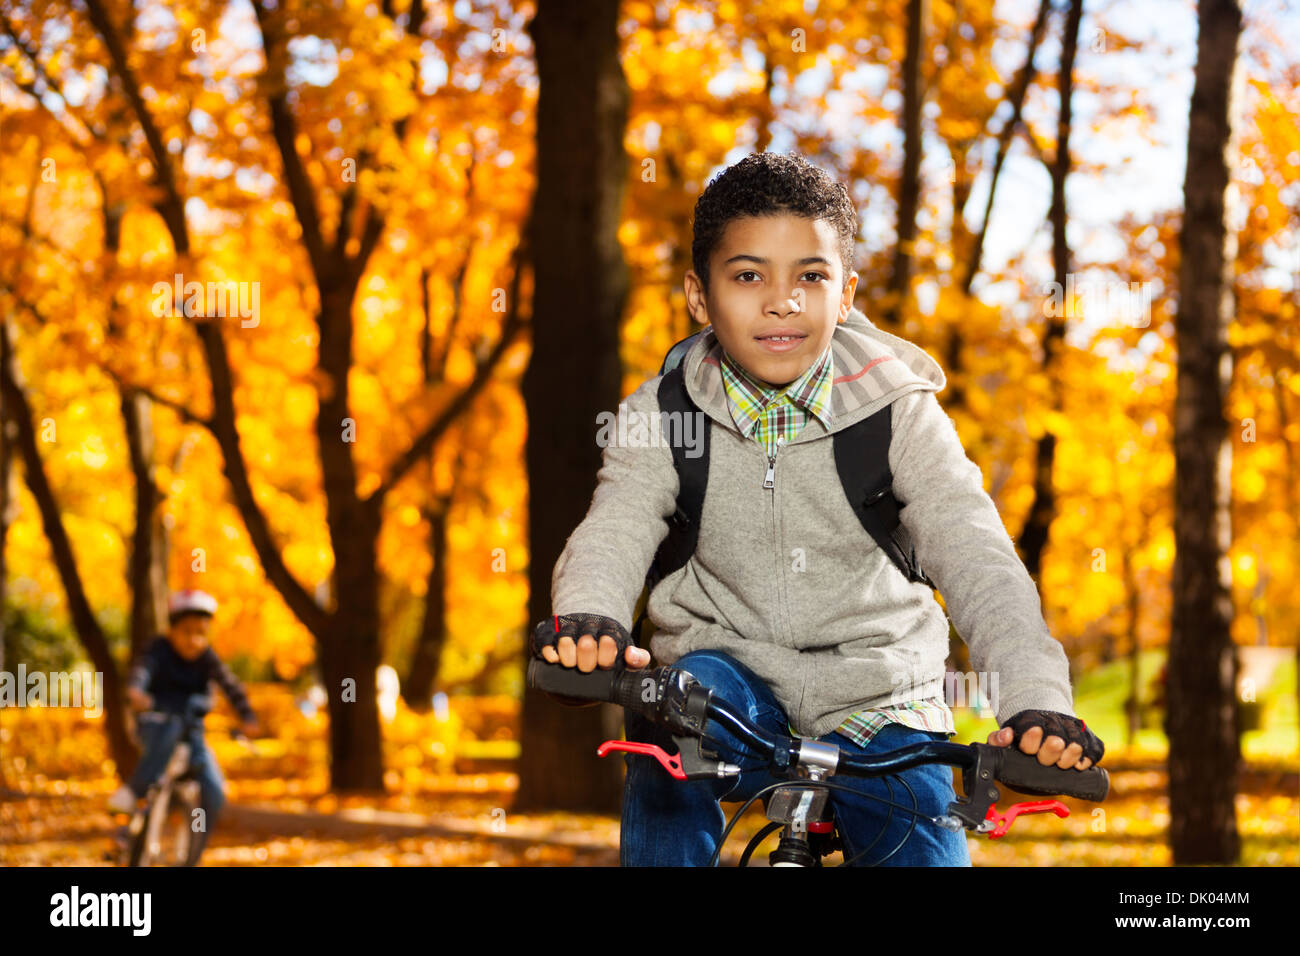 Cerrar retrato de un niño sobre la bicicleta en el parque de otoño con hojas de naranja Foto de stock